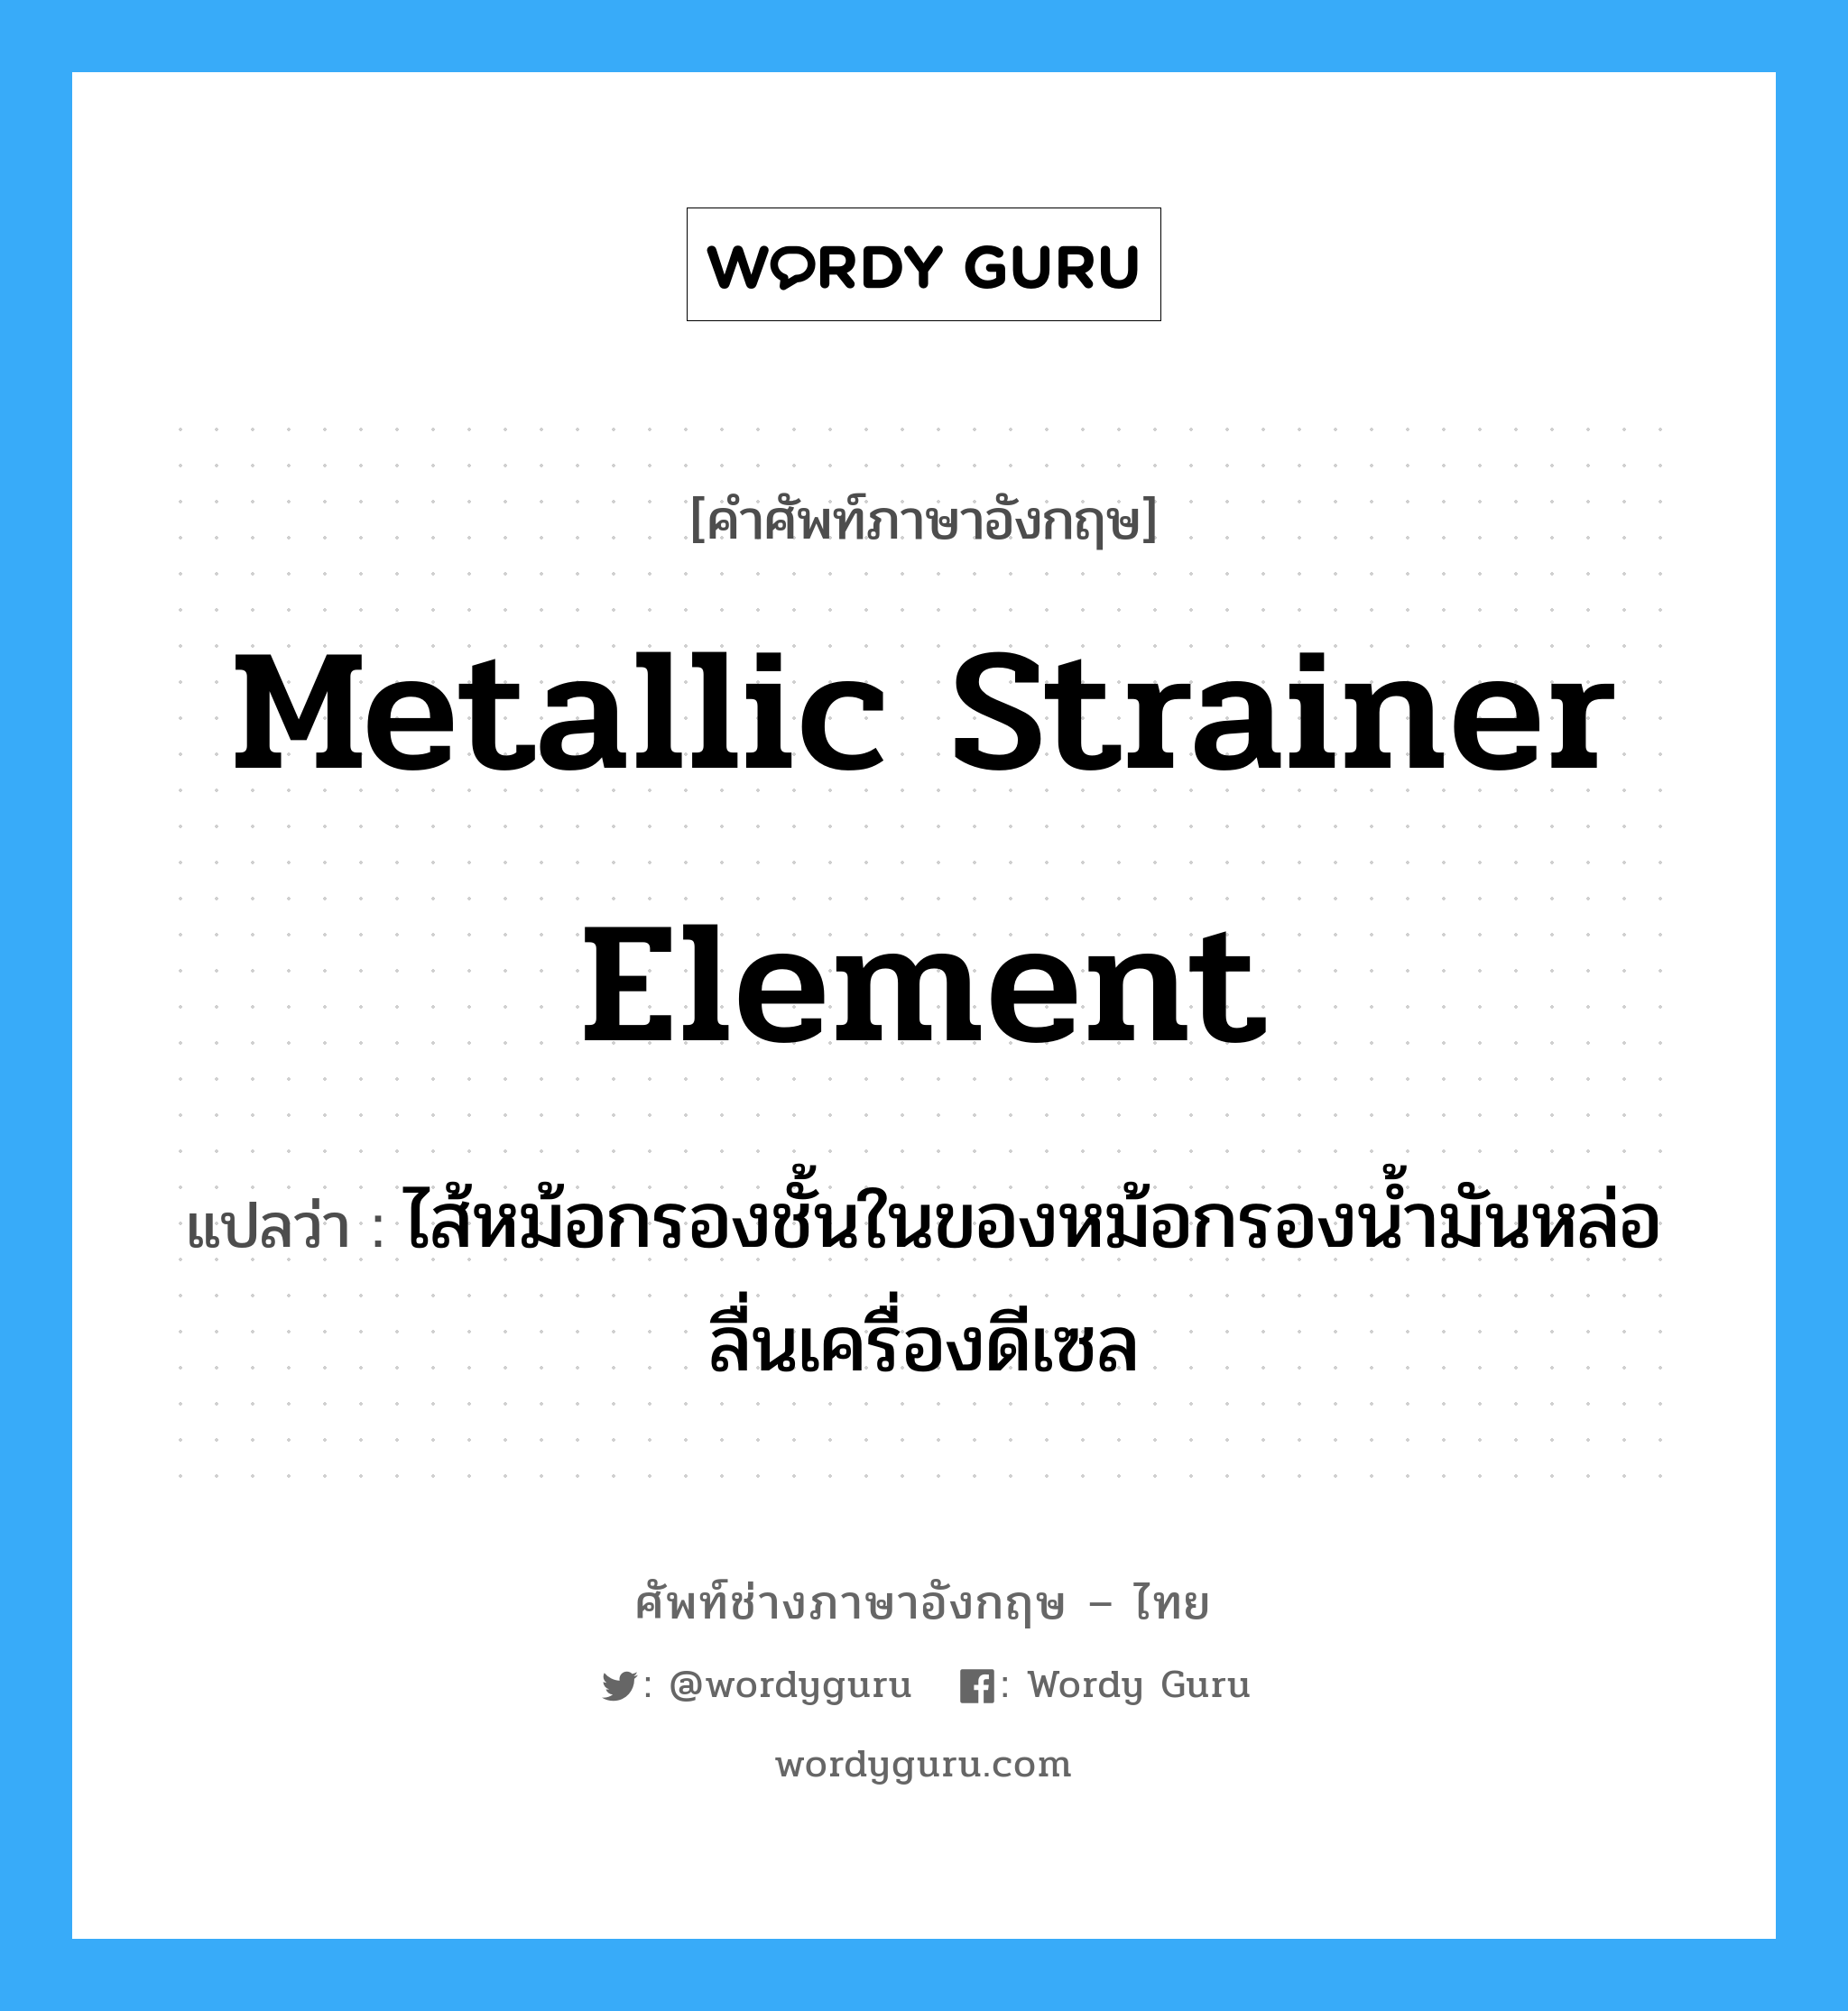 metallic strainer element แปลว่า?, คำศัพท์ช่างภาษาอังกฤษ - ไทย metallic strainer element คำศัพท์ภาษาอังกฤษ metallic strainer element แปลว่า ไส้หม้อกรองชั้นในของหม้อกรองน้ำมันหล่อลื่นเครื่องดีเซล